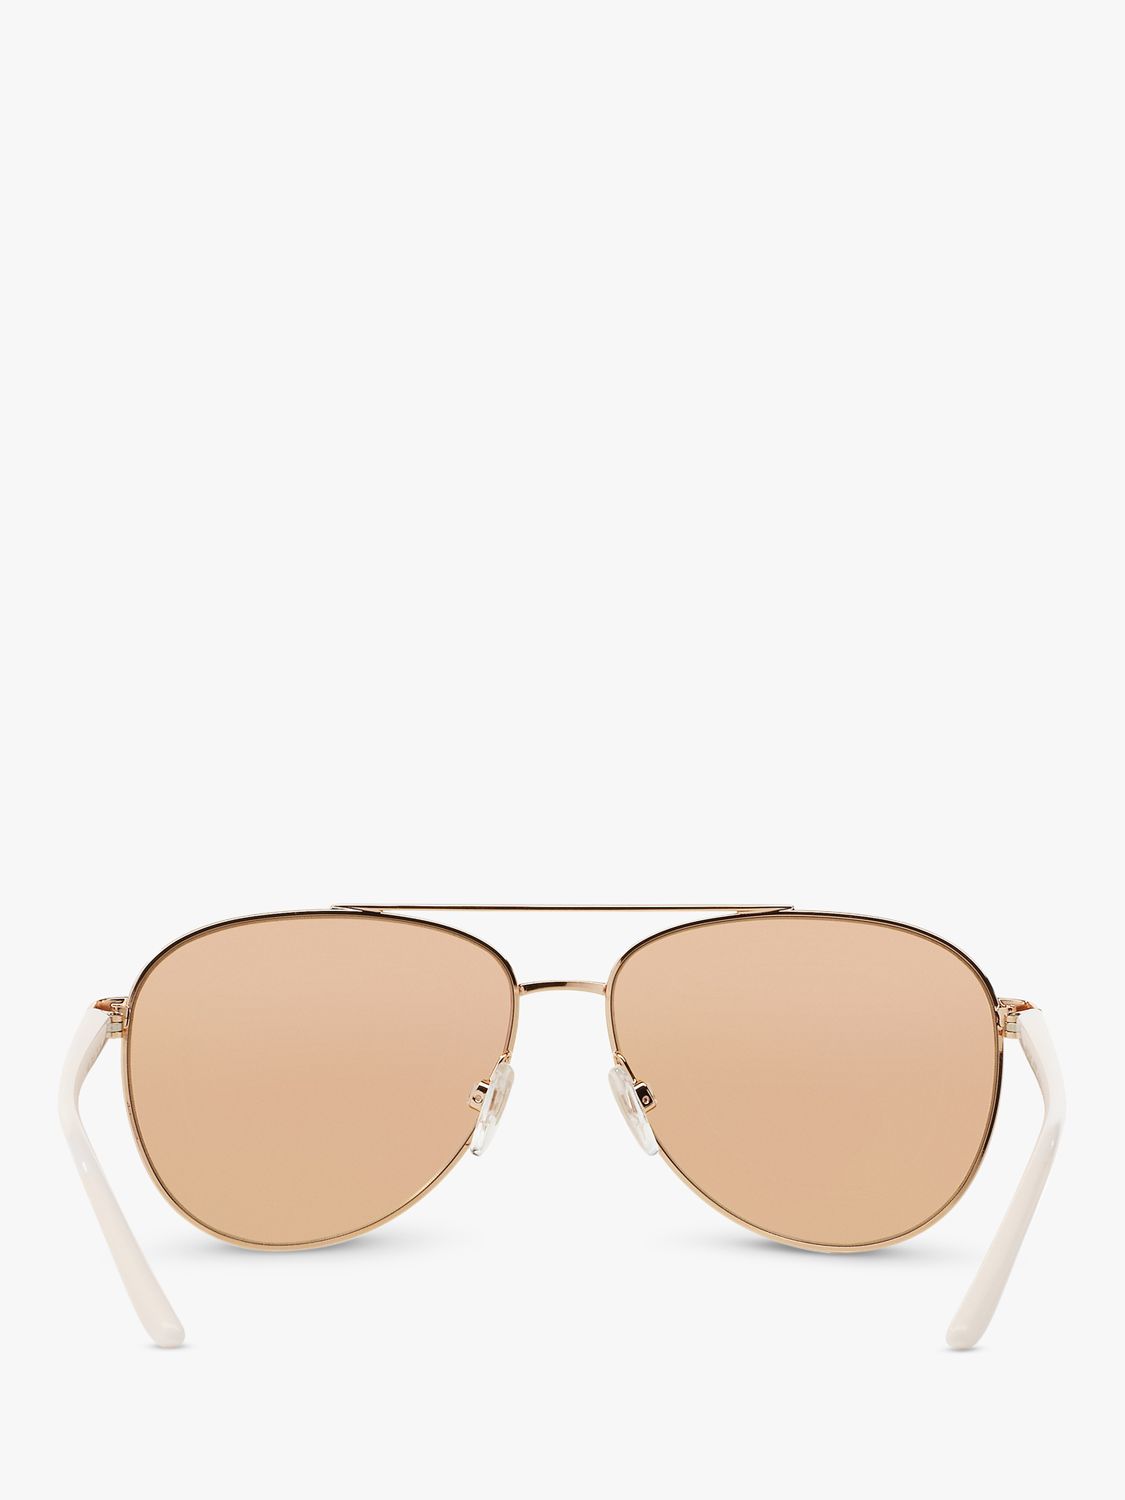 Michael Kors MK5007 Hvar I Aviator Sunglasses, Rose Gold/Mirror Beige ...